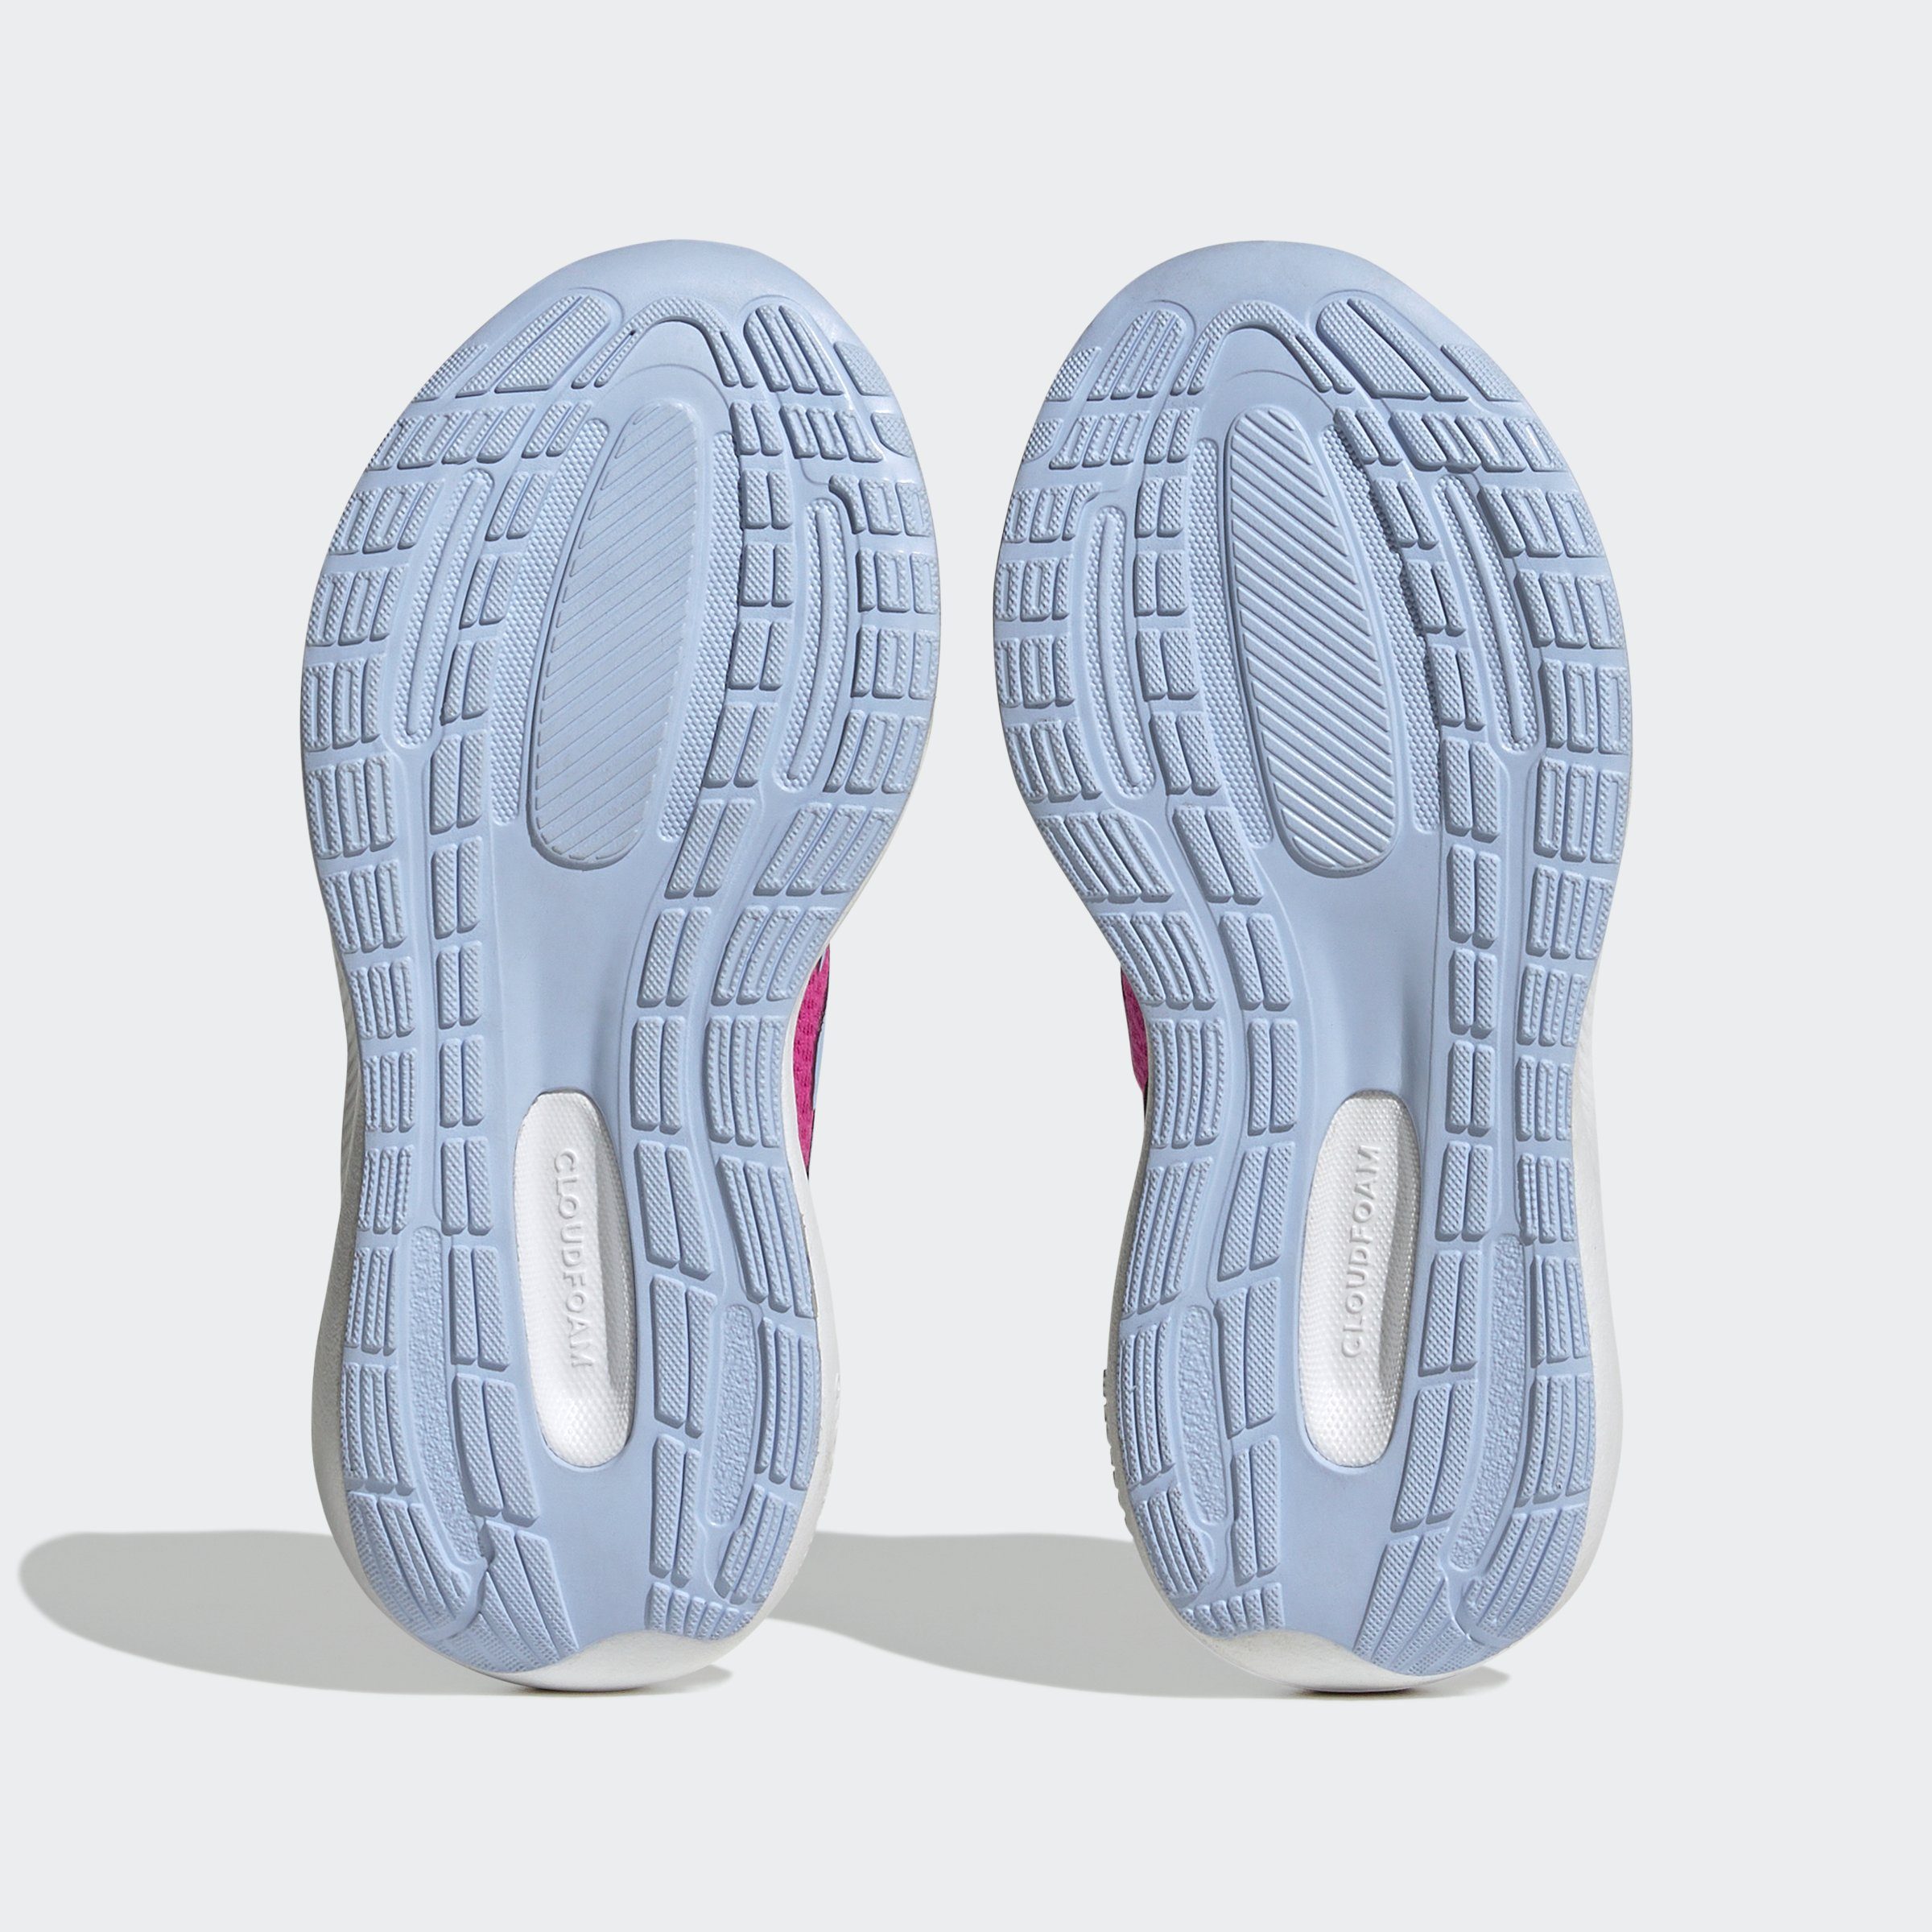 LACE ELASTIC Sportswear STRAP TOP pink RUNFALCON adidas Sneaker 3.0